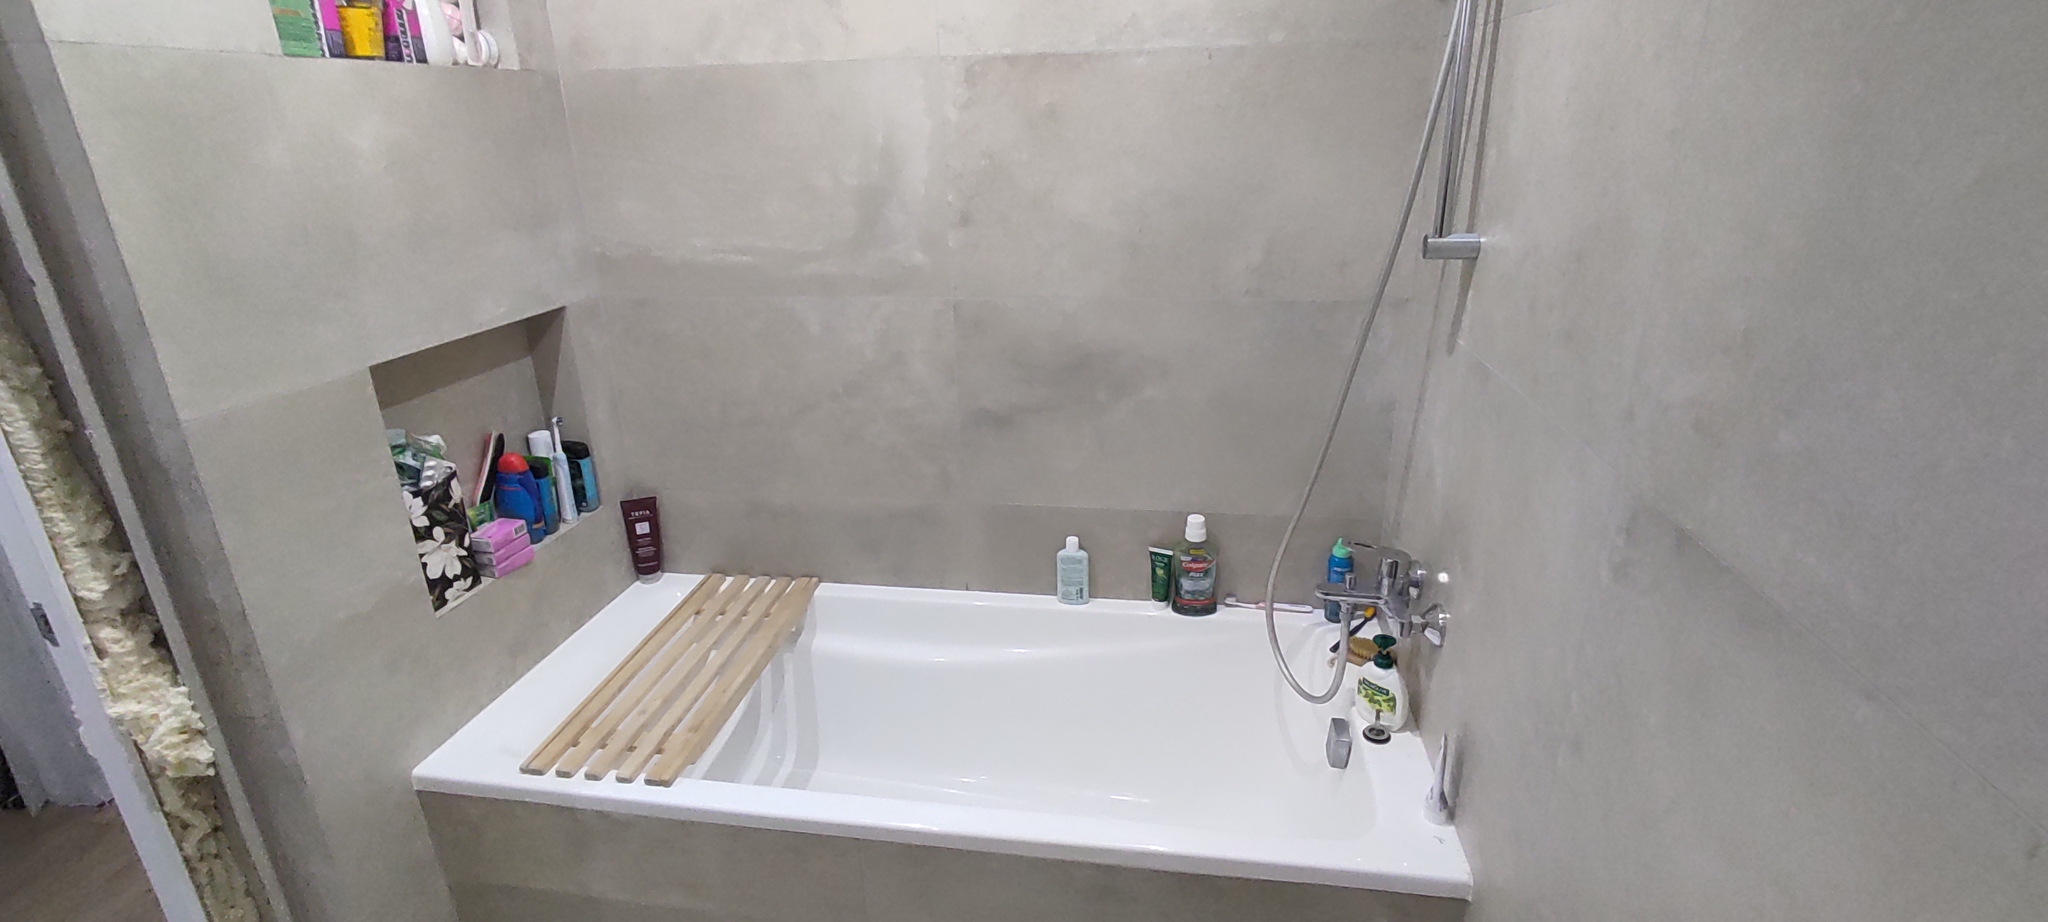 Bathroom renovation. Attempt number 12 - My, Repair of the bathroom, Krasnoyarsk, Longpost, Repair